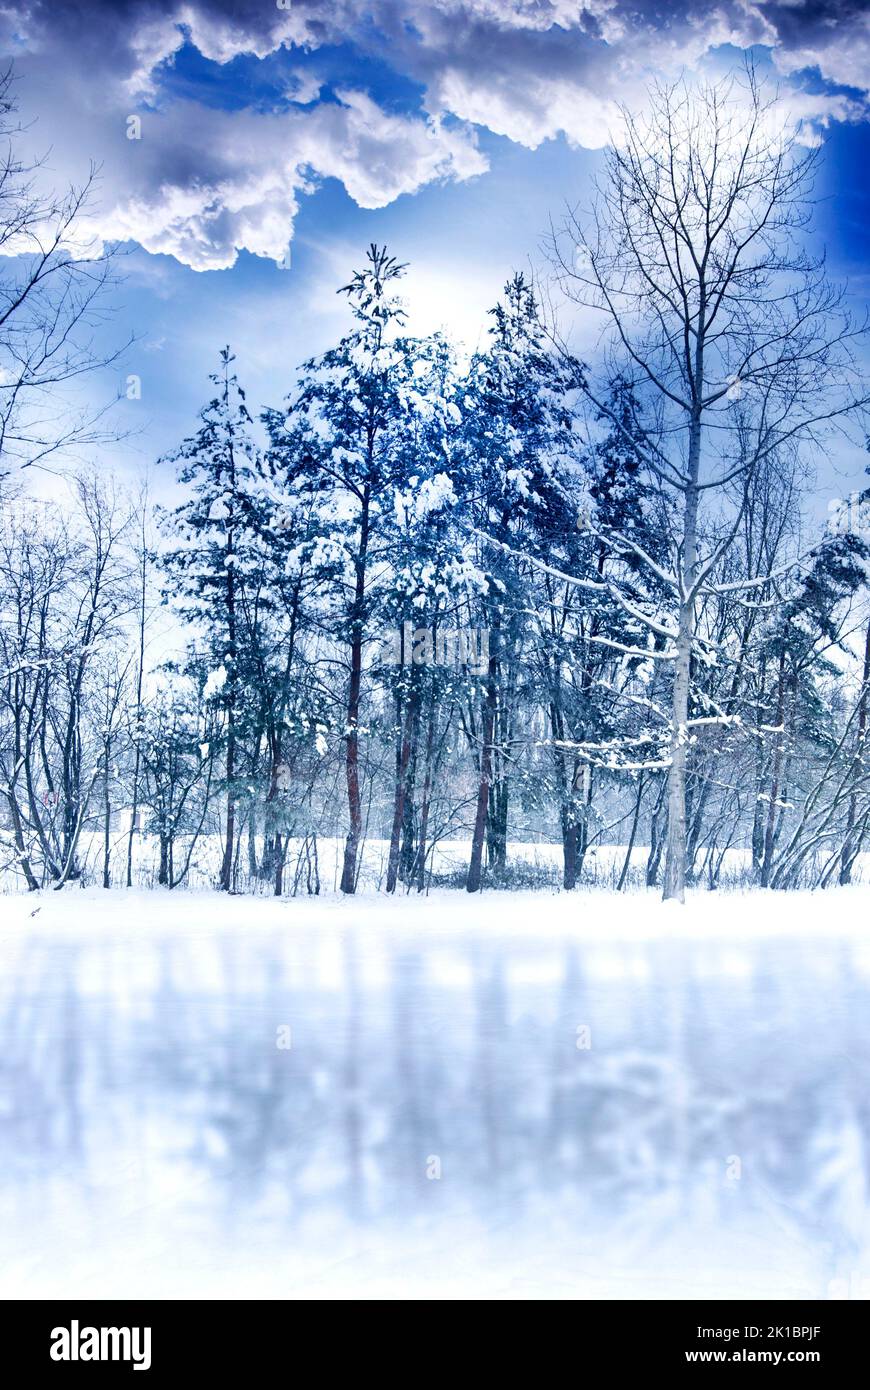 romántico paisaje invernal con nieve, árboles coníferas, cielo azul con nubes blancas y Foto de stock